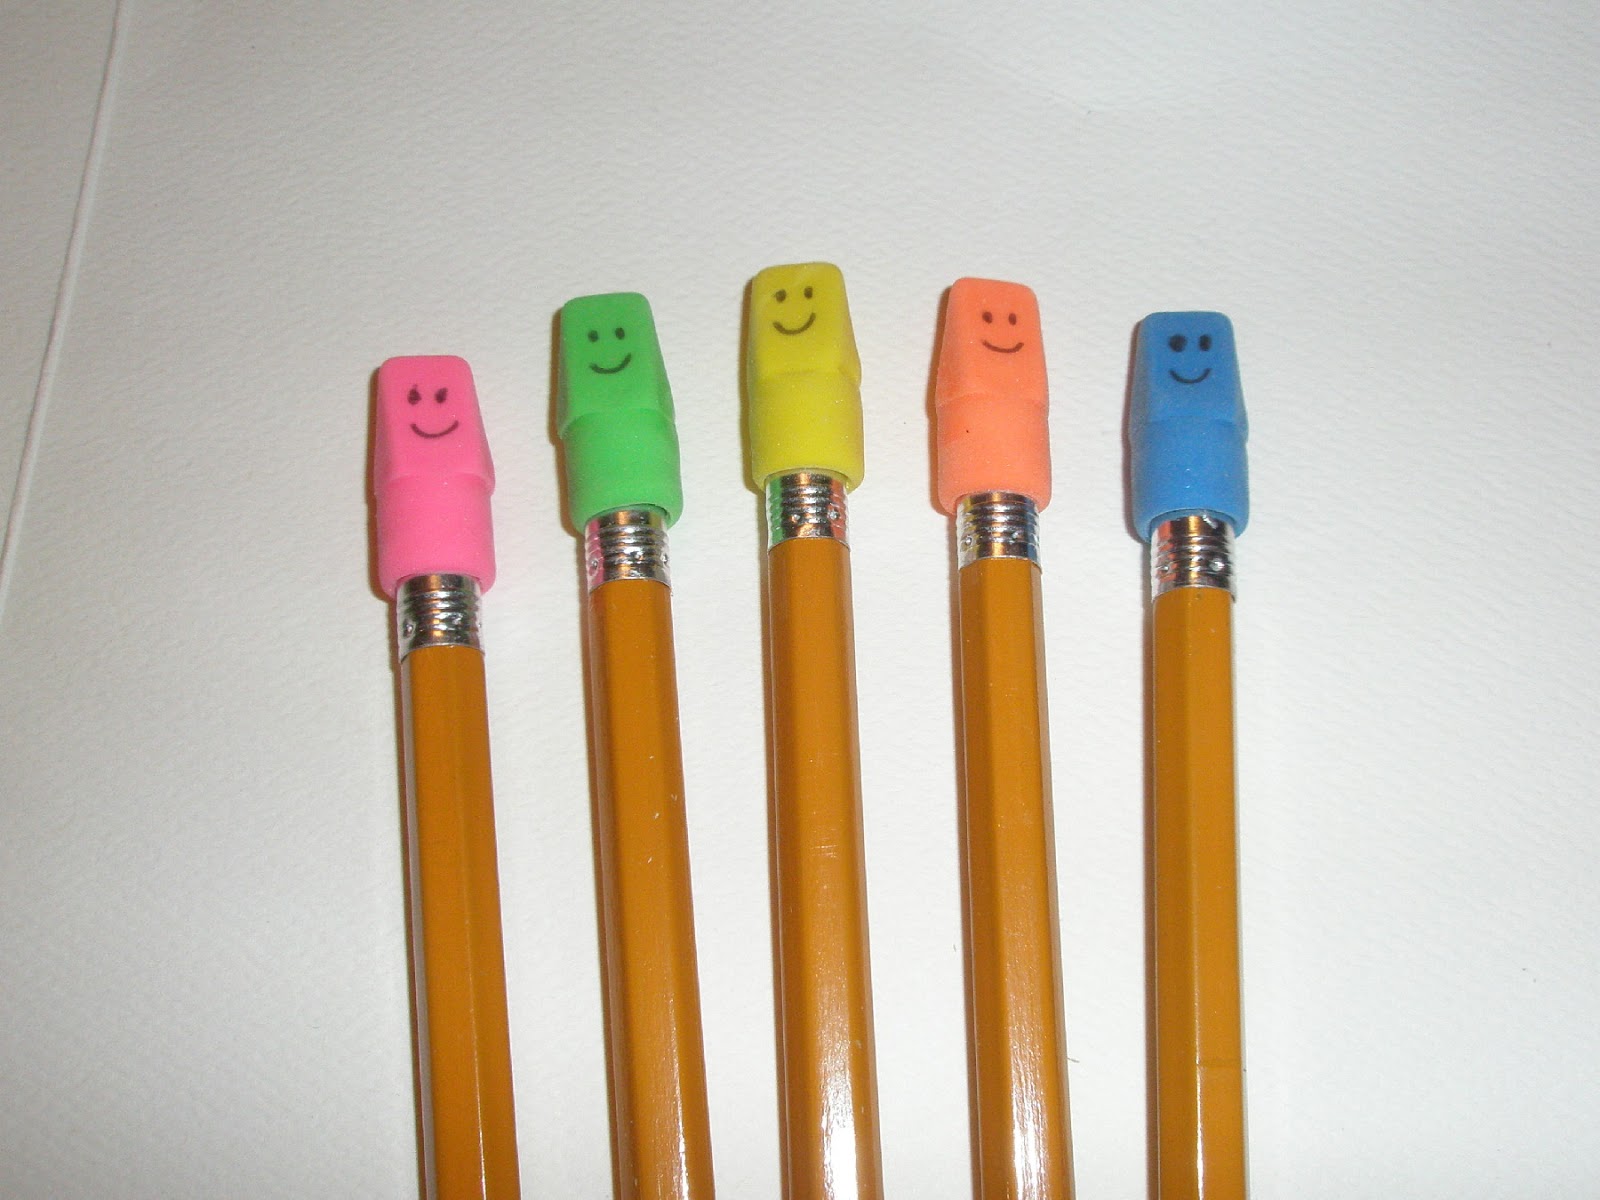 Pencil Top Eraser Put Eraser Caps On Pencils